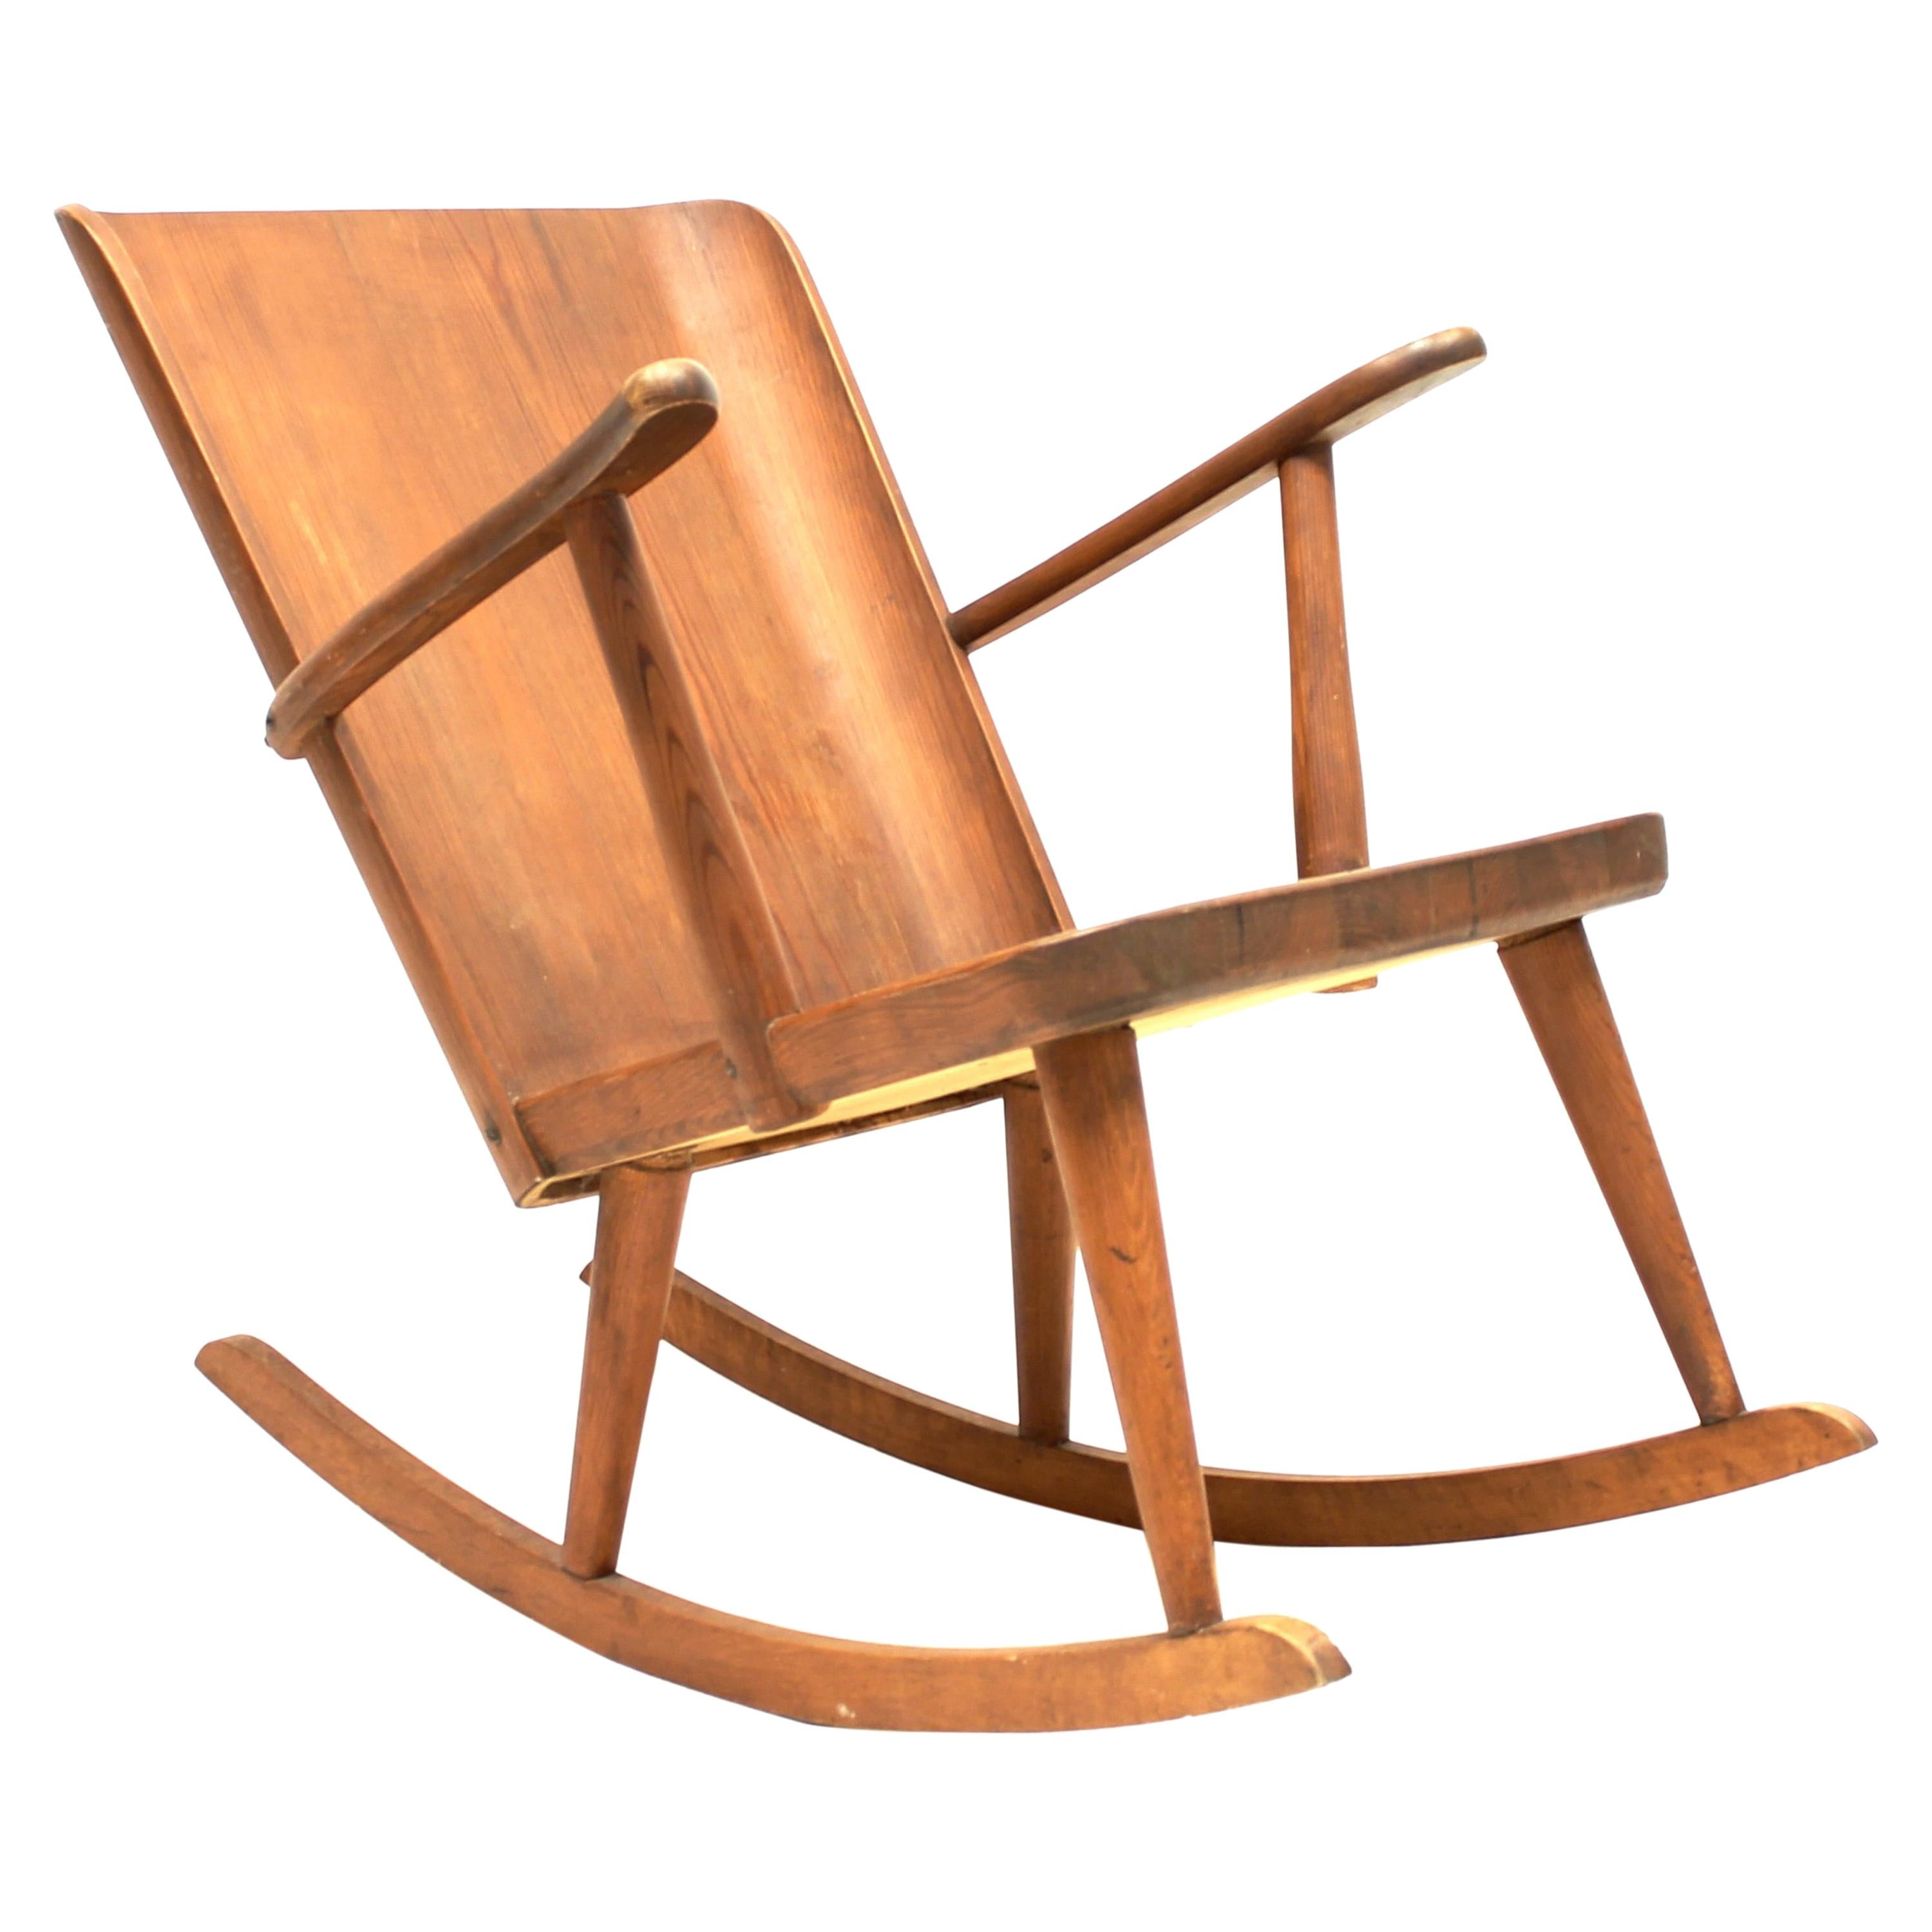 The Pine Rocking Chair von Göran Malmvall aus der Svensk Fur Kollektion für Karl Andersson